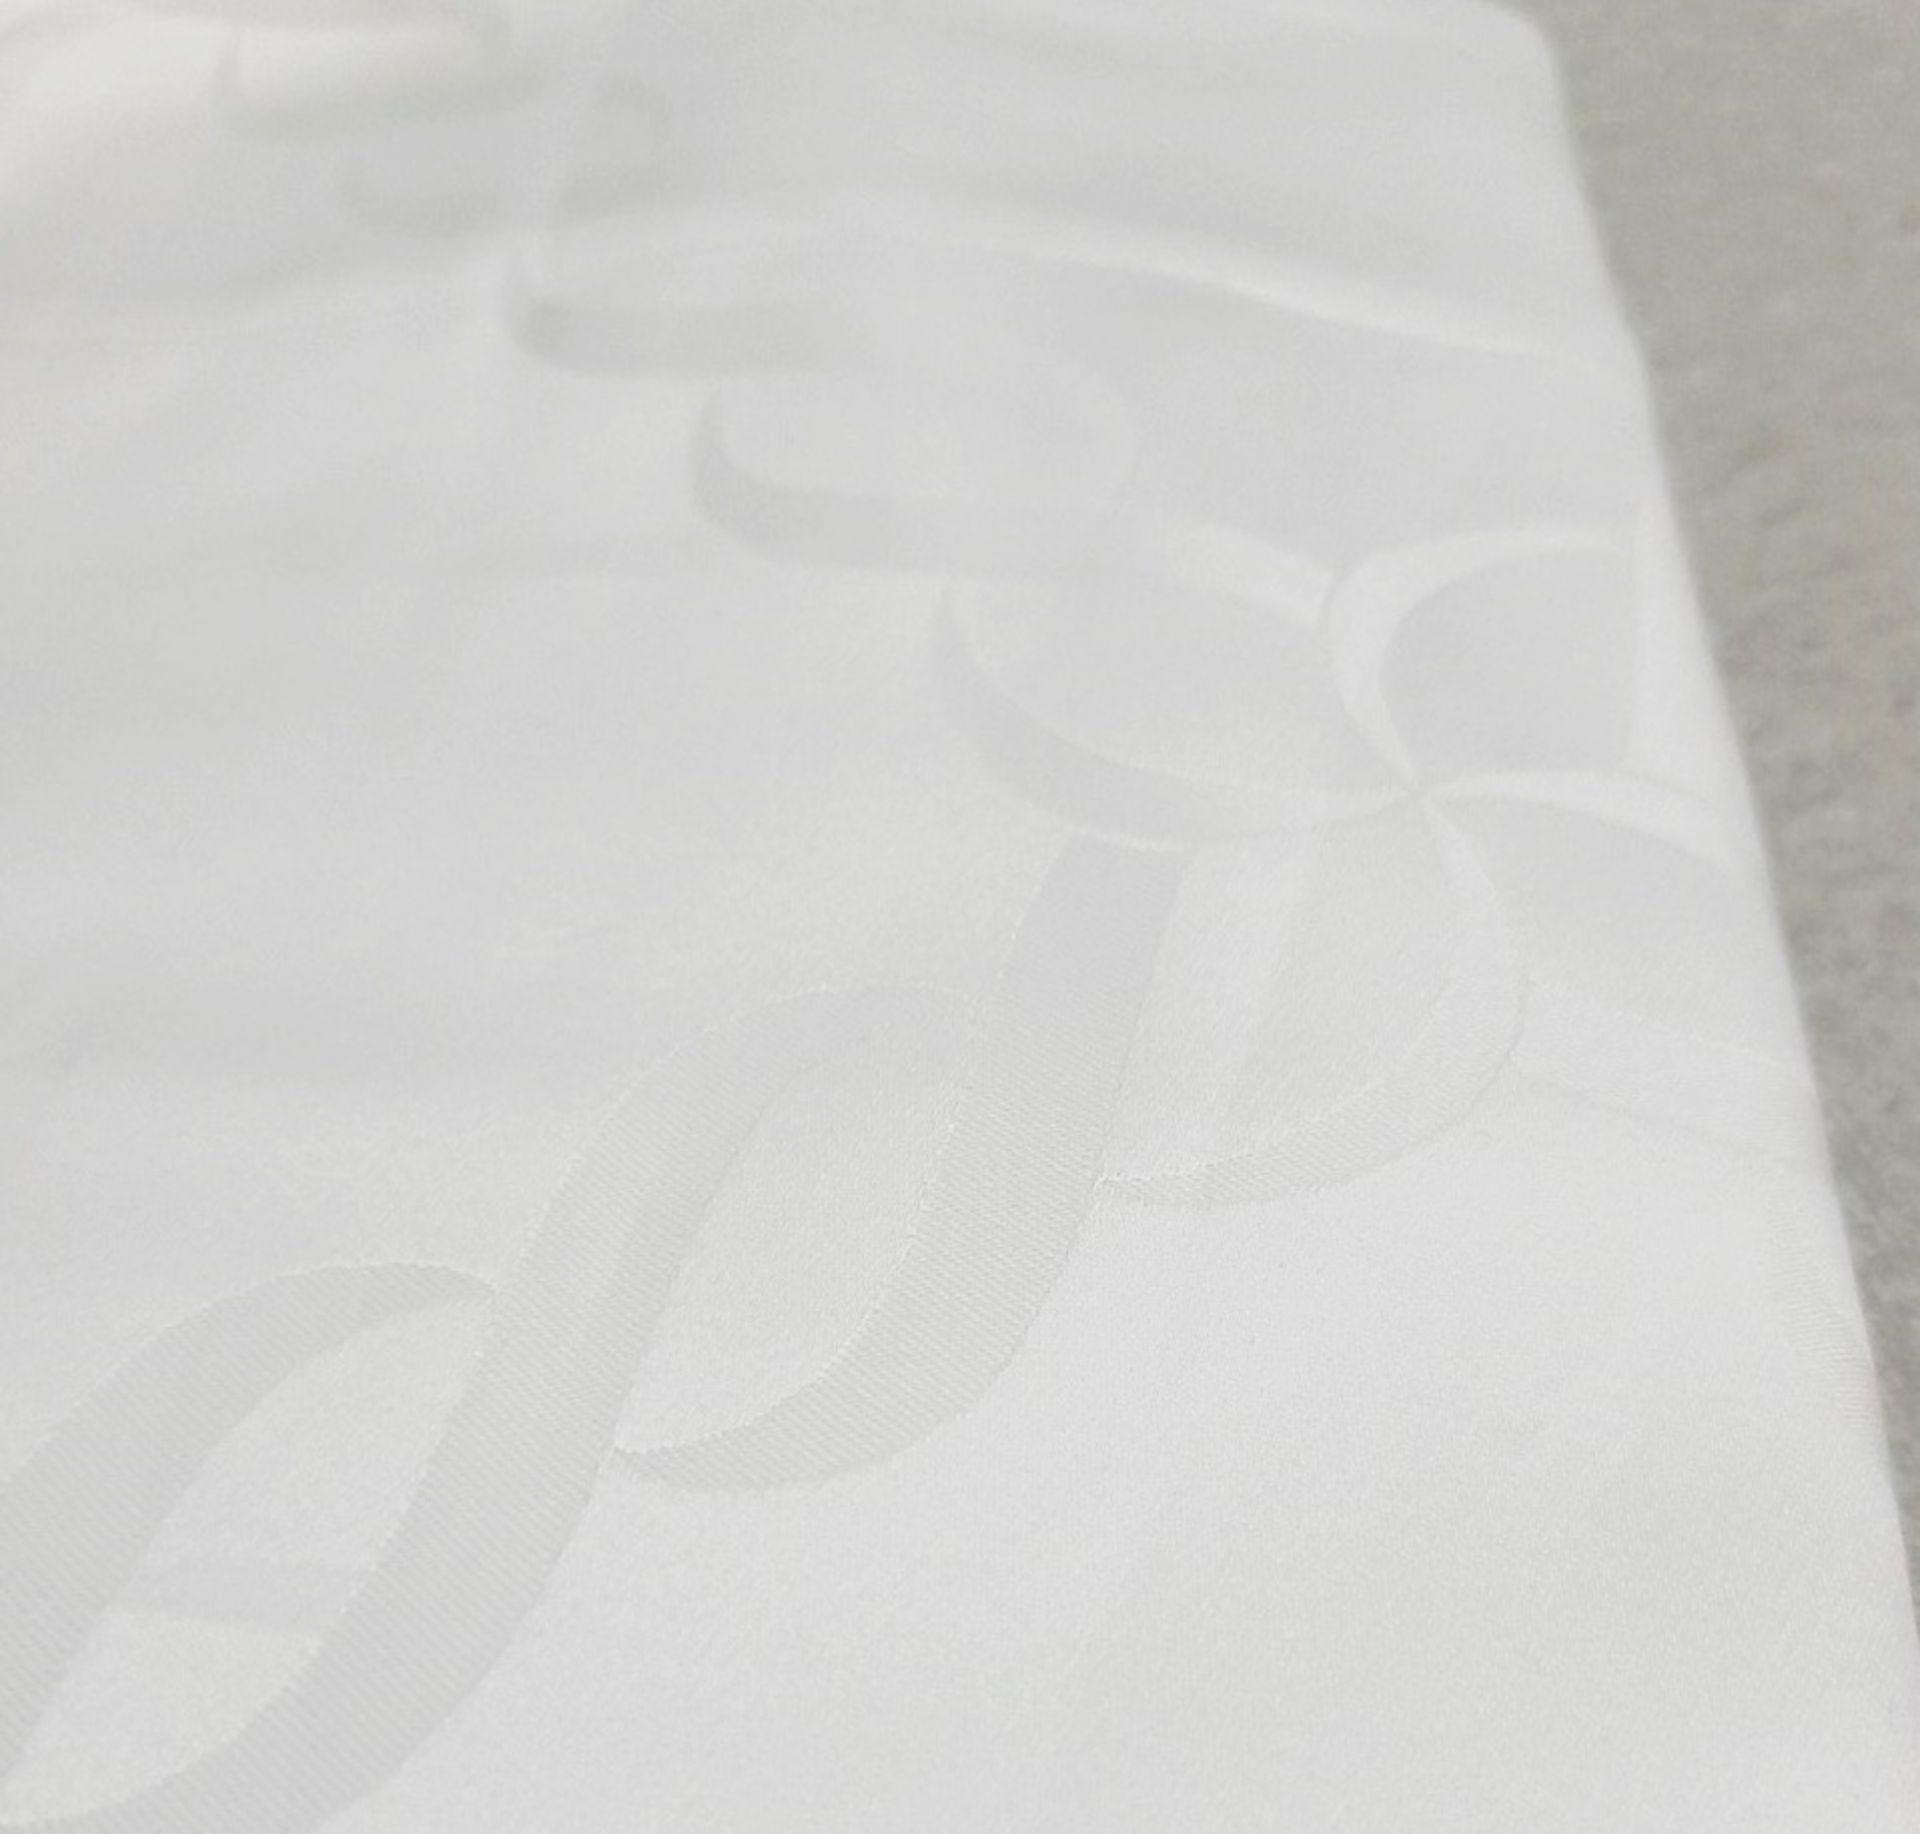 1 x PRATESI Treccia Italian Pillow Shams Made With Egyptian Cotton 65x65cm